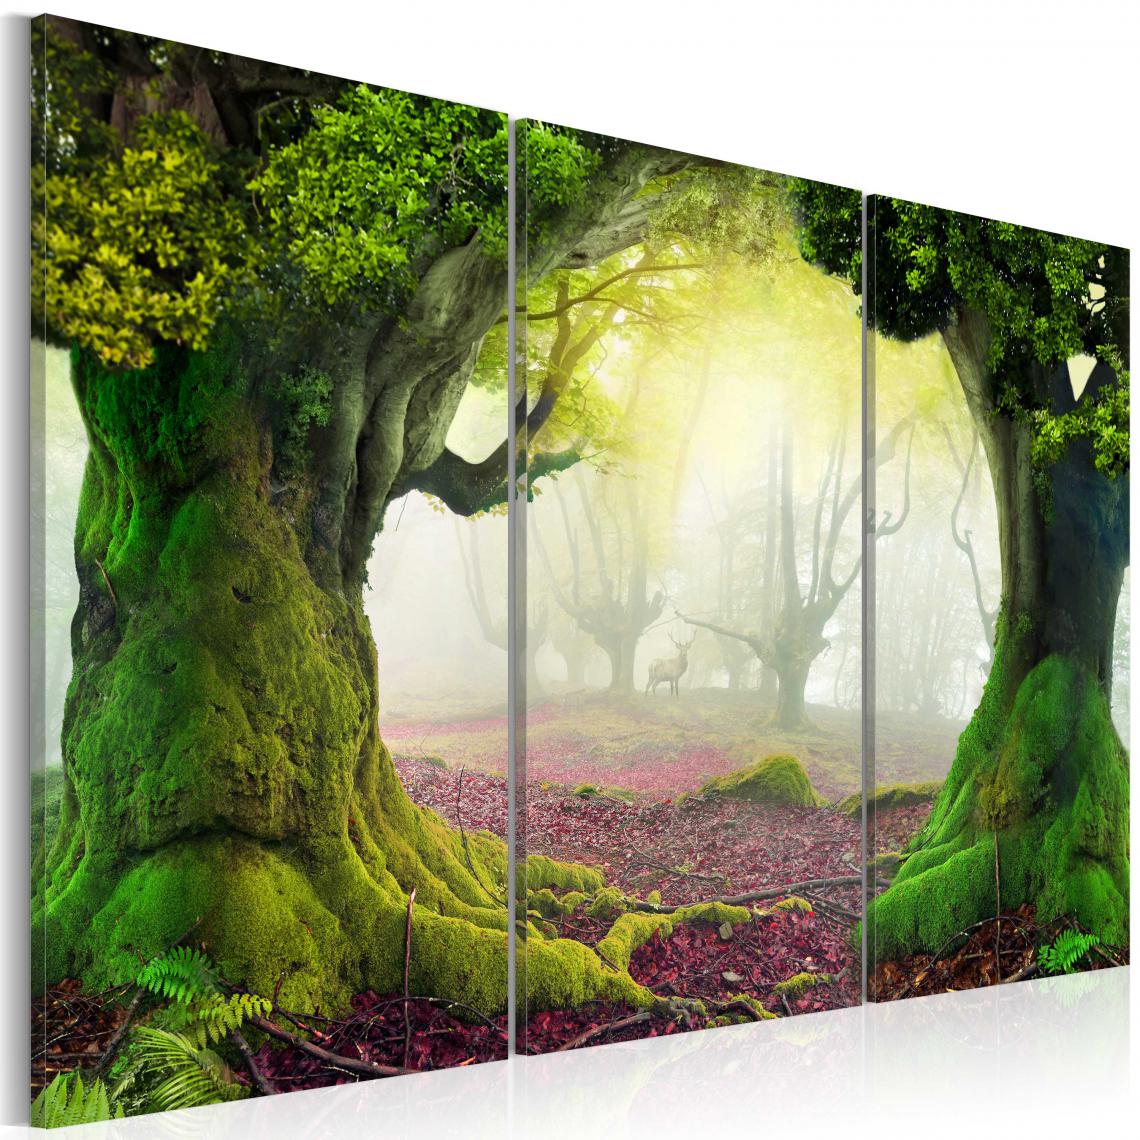 Decoshop26 - Tableau sur toile en 3 panneaux décoration murale image imprimée cadre en bois à suspendre Forêt mystérieuse - triptyque 120x80 cm 11_0006164 - Tableaux, peintures